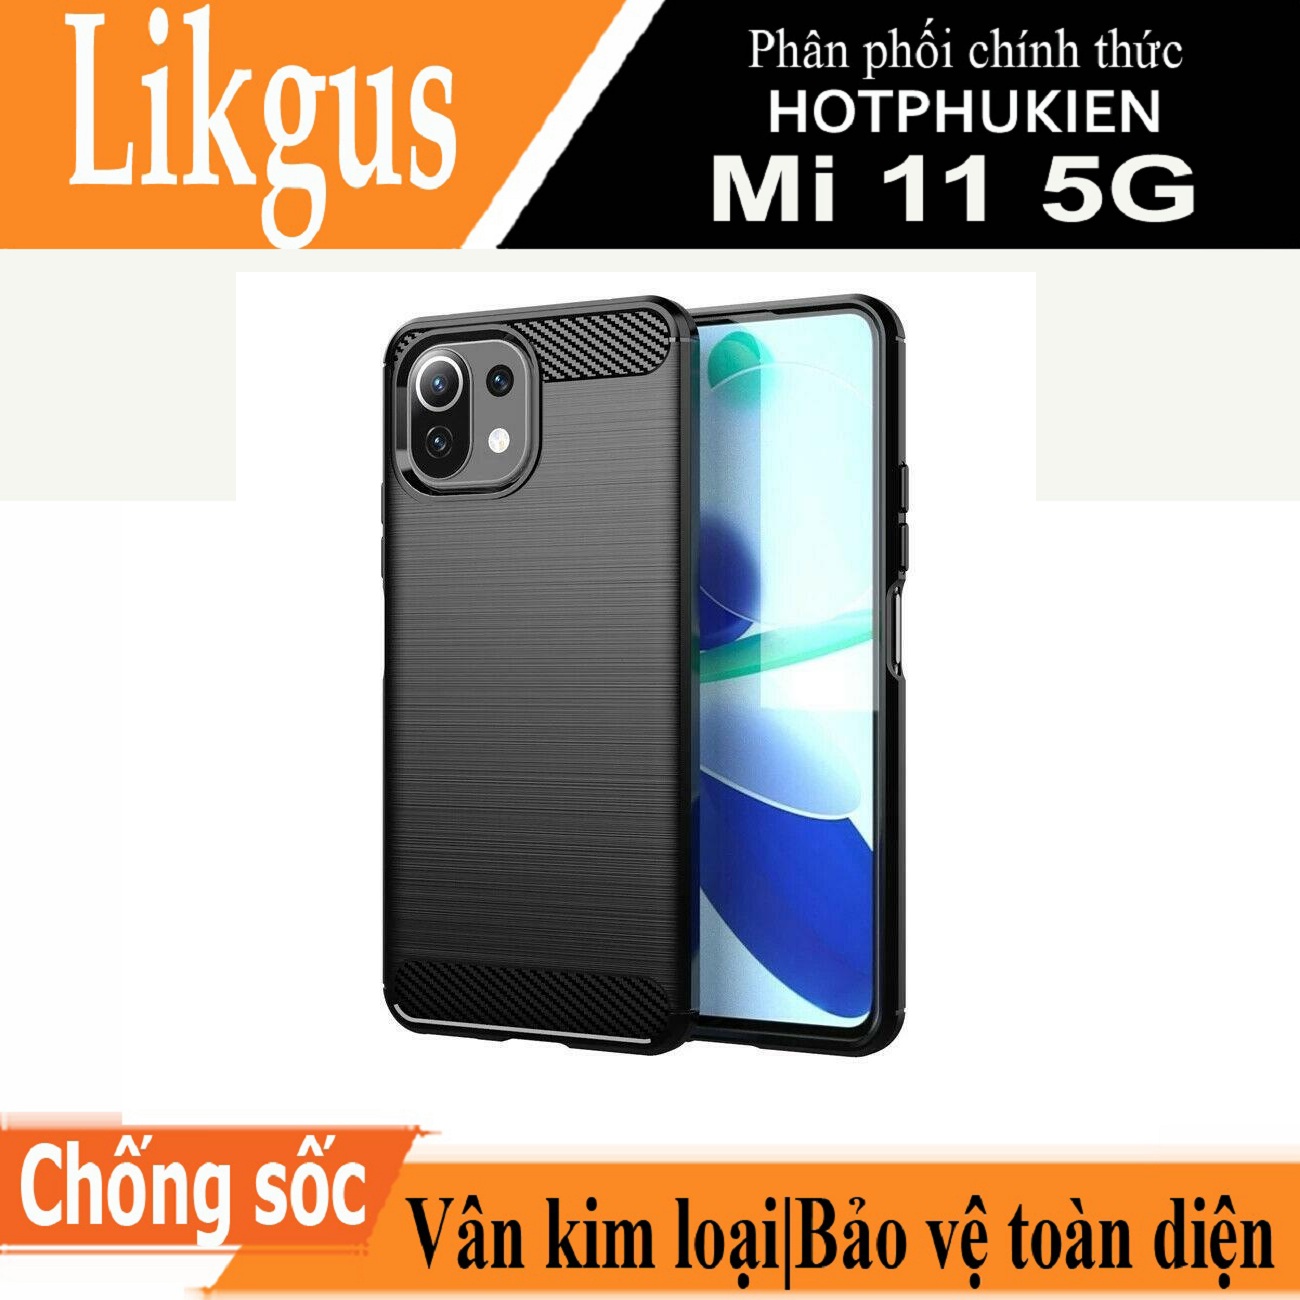 Ốp lưng chống sốc vân kim loại cho Xiaomi Mi 11 5G hiệu Likgus